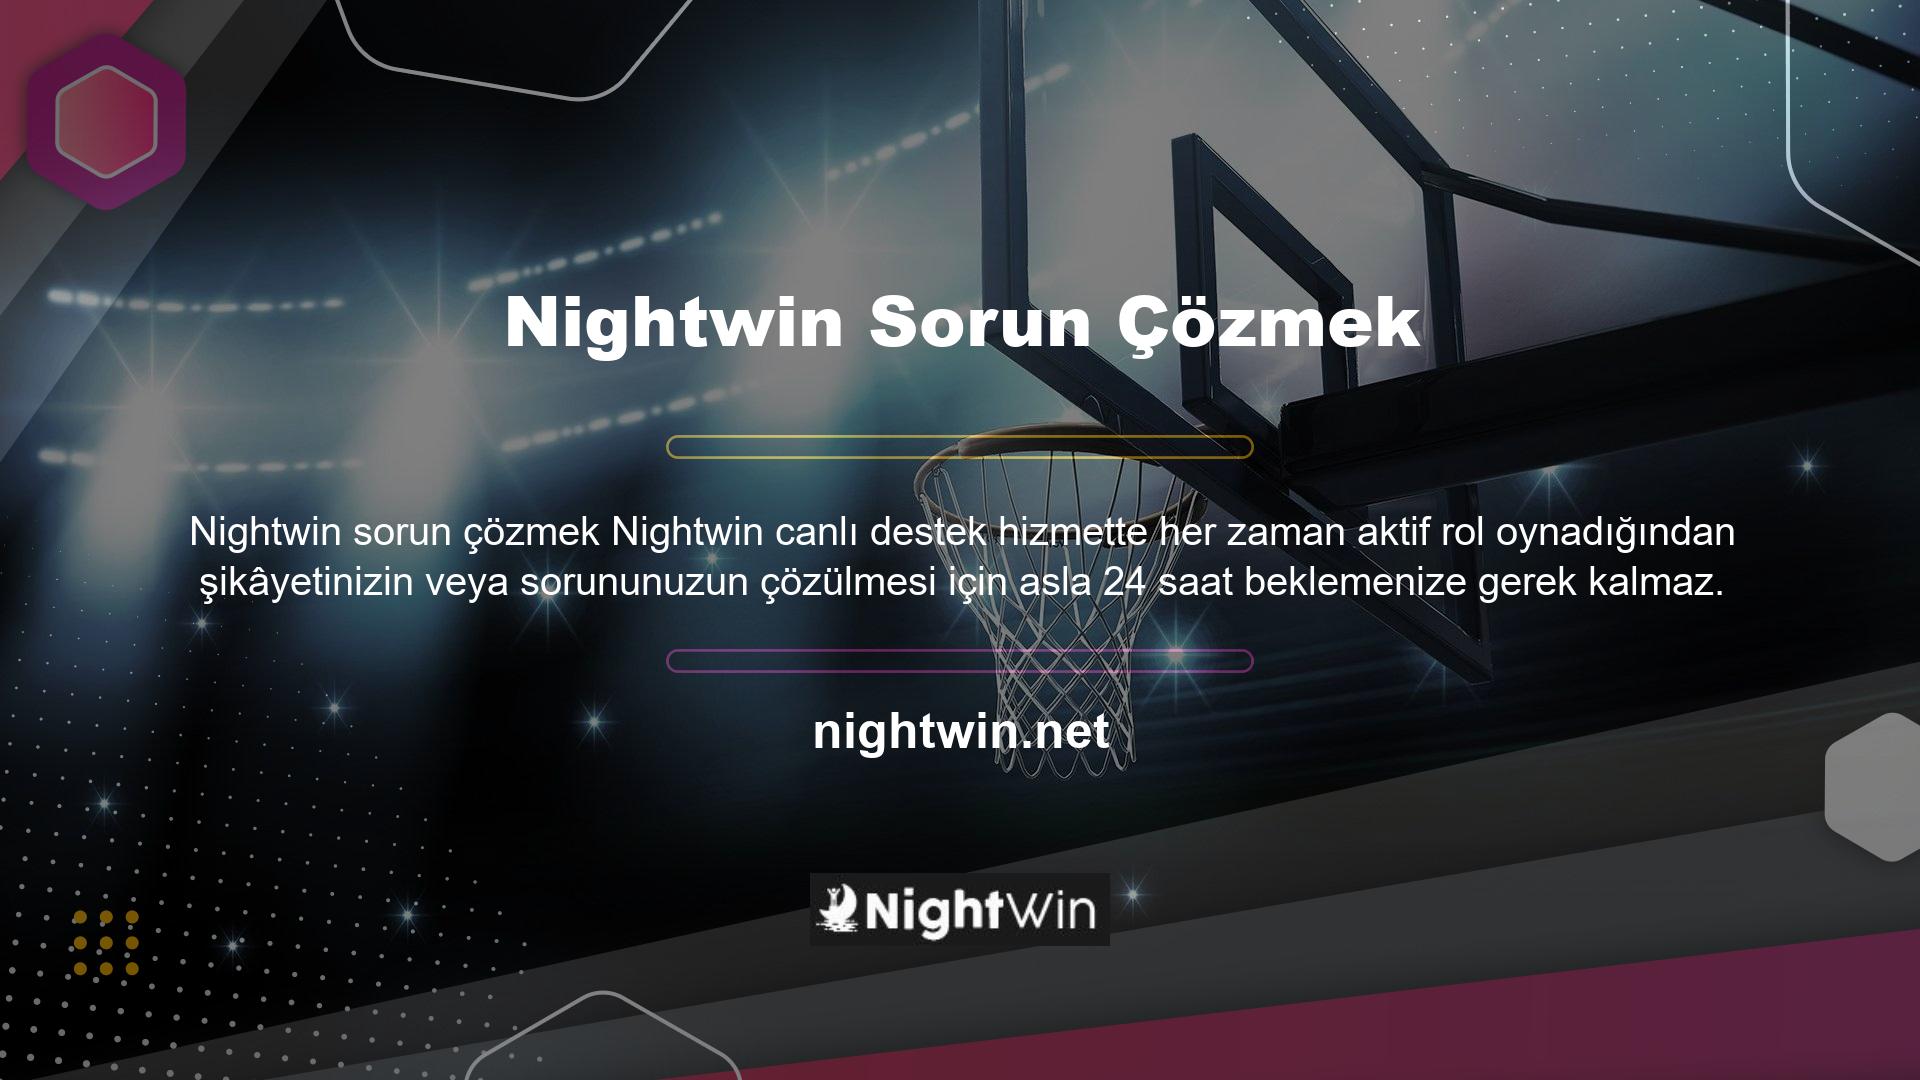 Nightwin ekibi şikâyetin nedenini ciddi ve titizlikle araştıracaktır